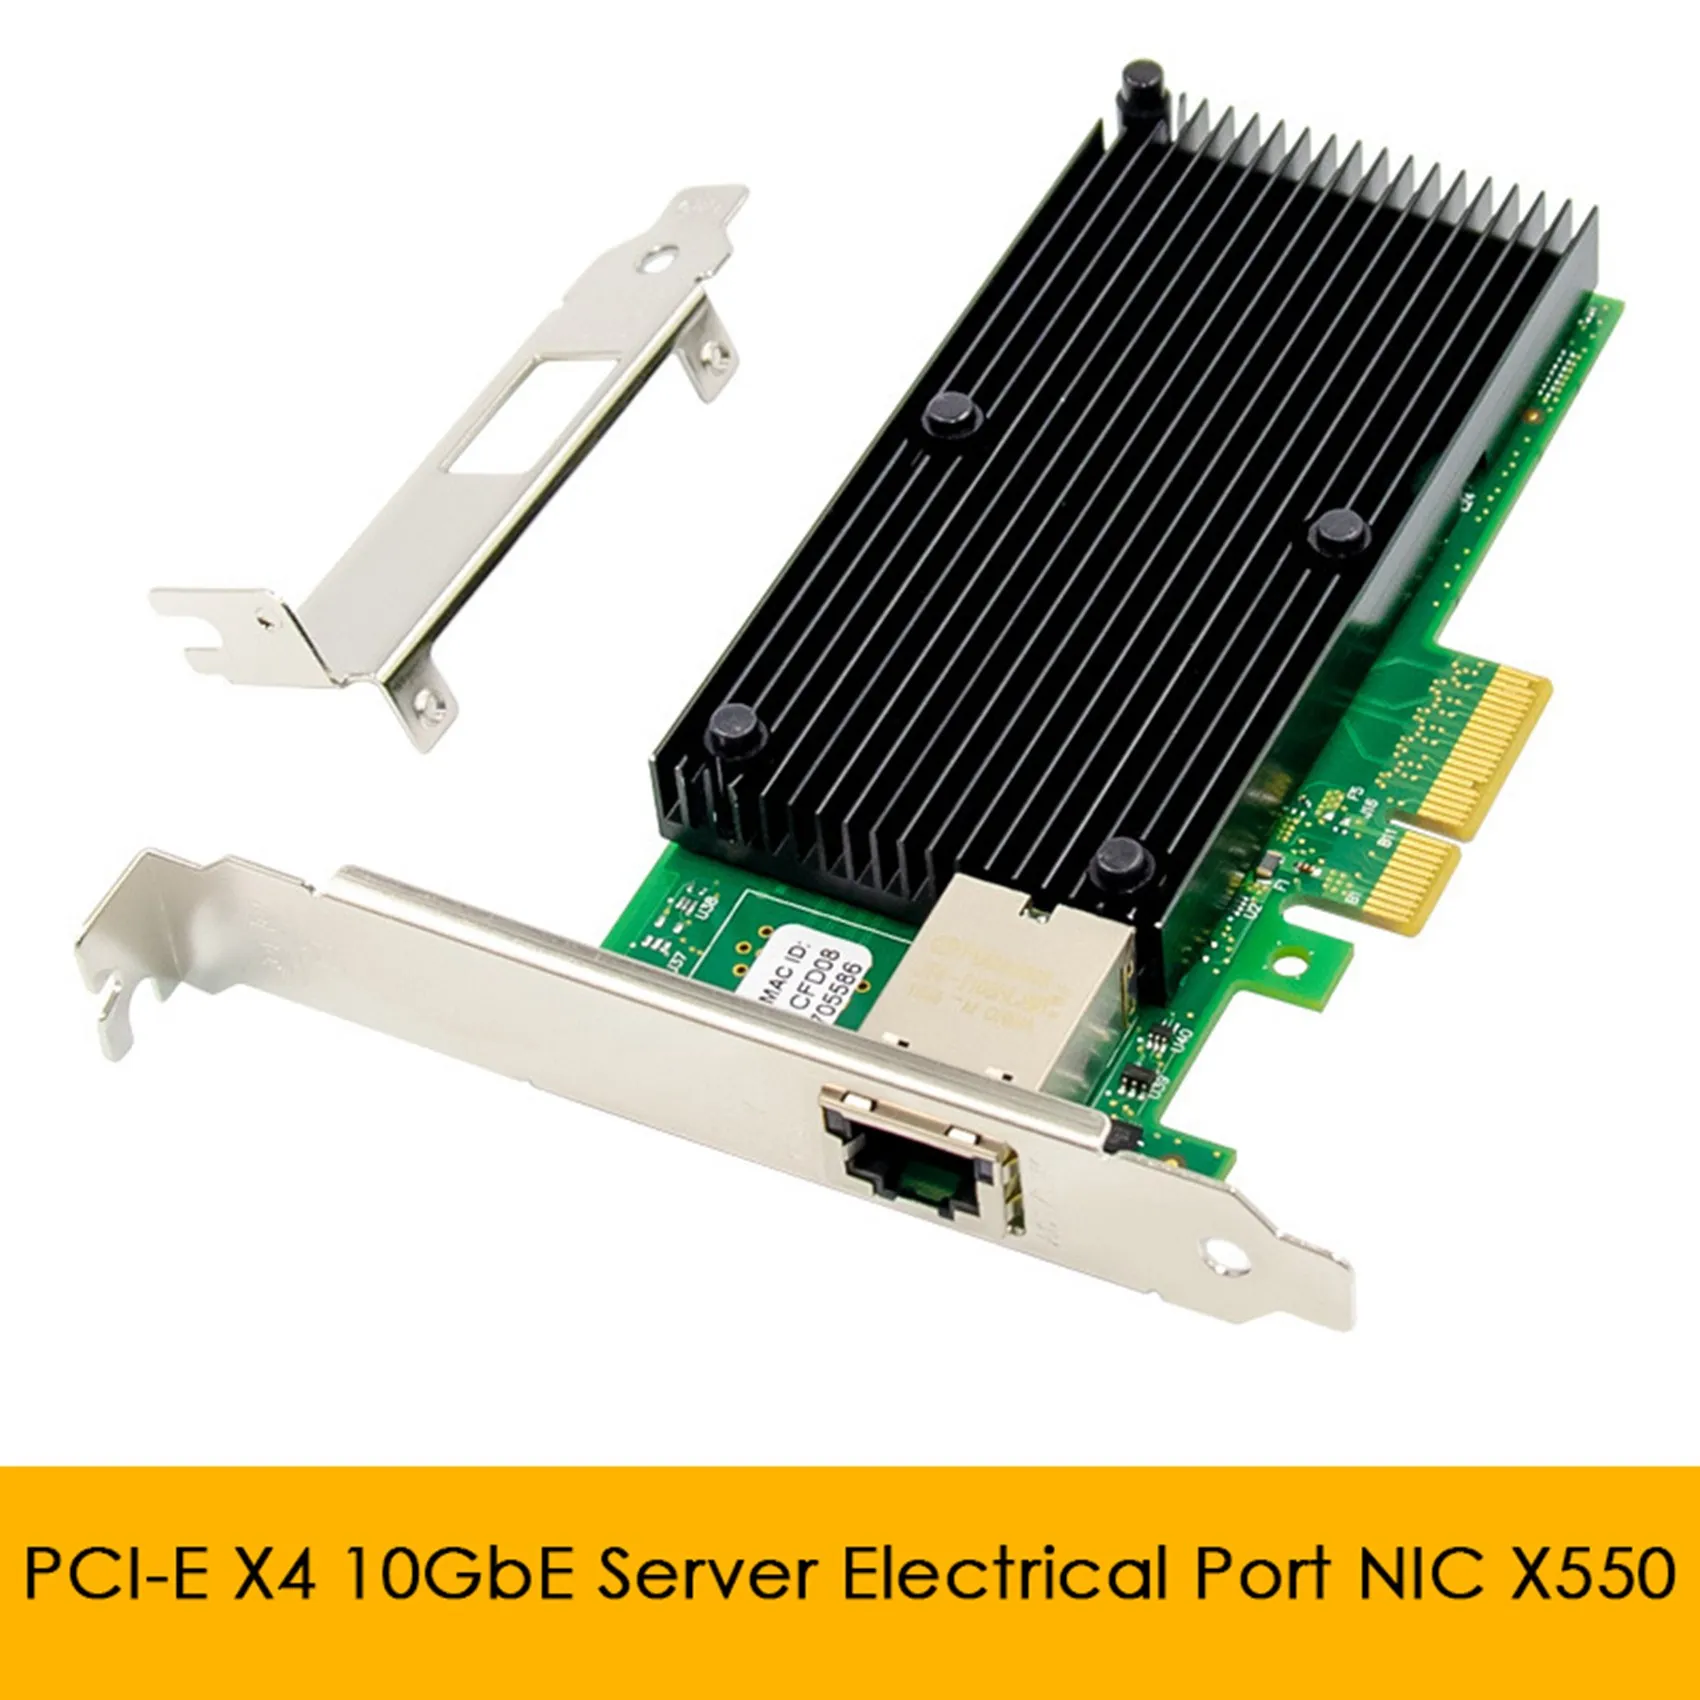 

Серверная сетевая карта X550 PCI-E X4, 10 Гбит, сетевая карта для сервера с электрическим портом, стандартная сетевая карта для сервера Ethernet